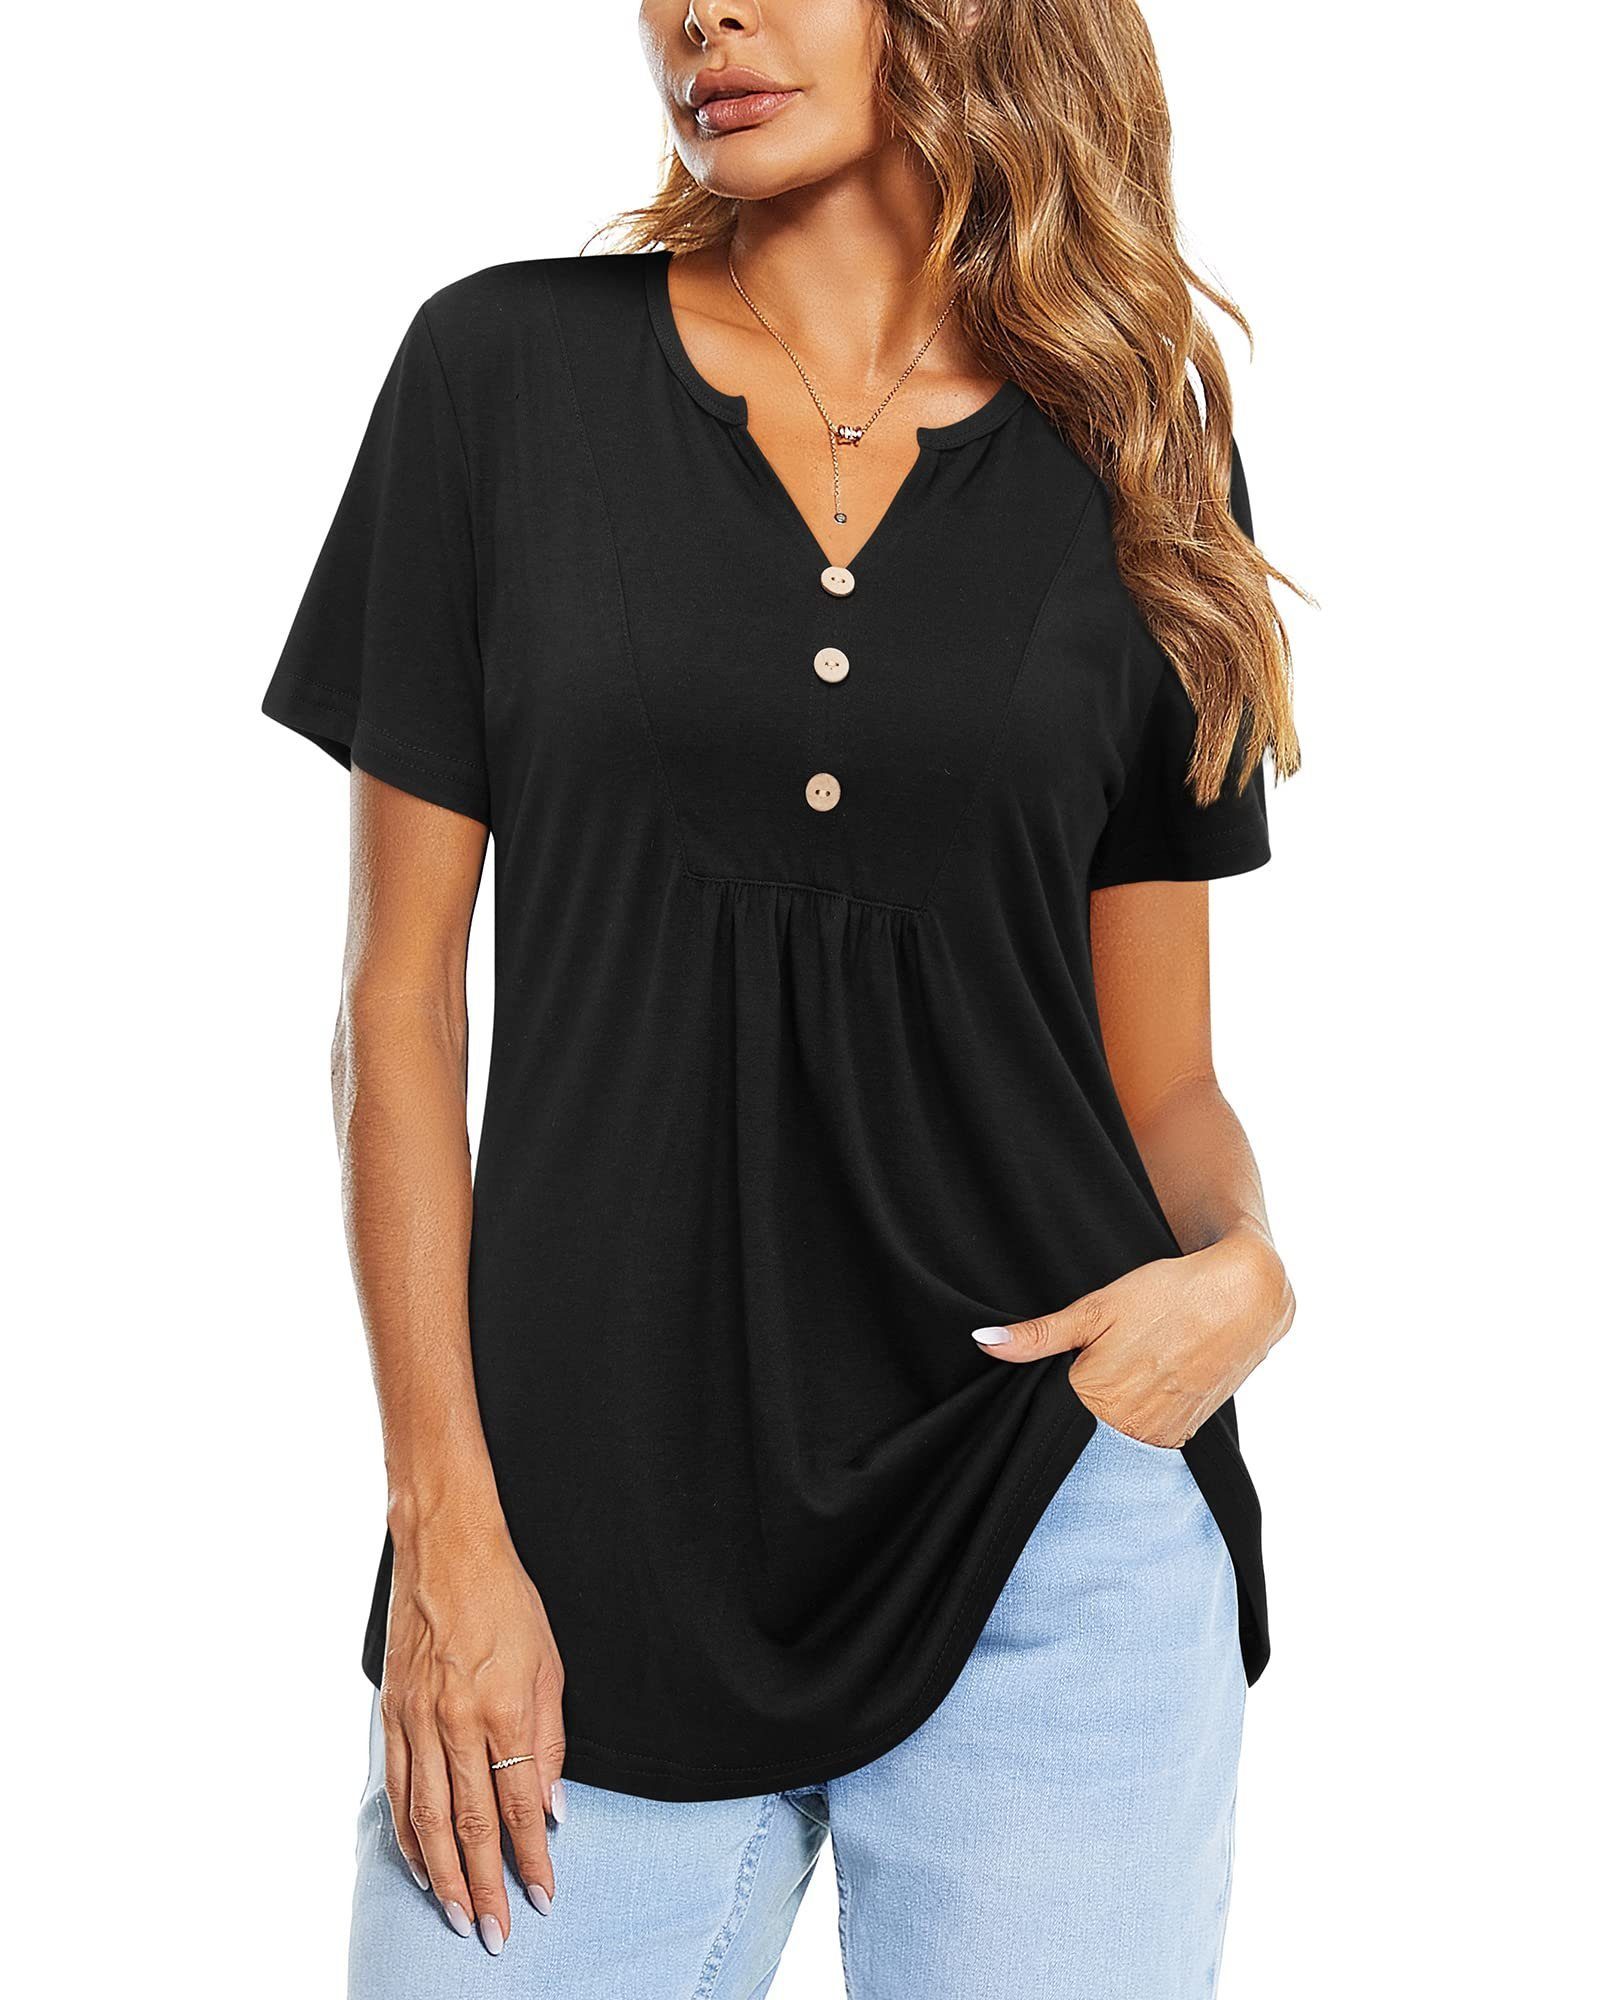 G4Free T-Shirt Shirt Damen Schwarz Ausschnitt V T shirts Kurzarm Plissiert Oberteile Tunika